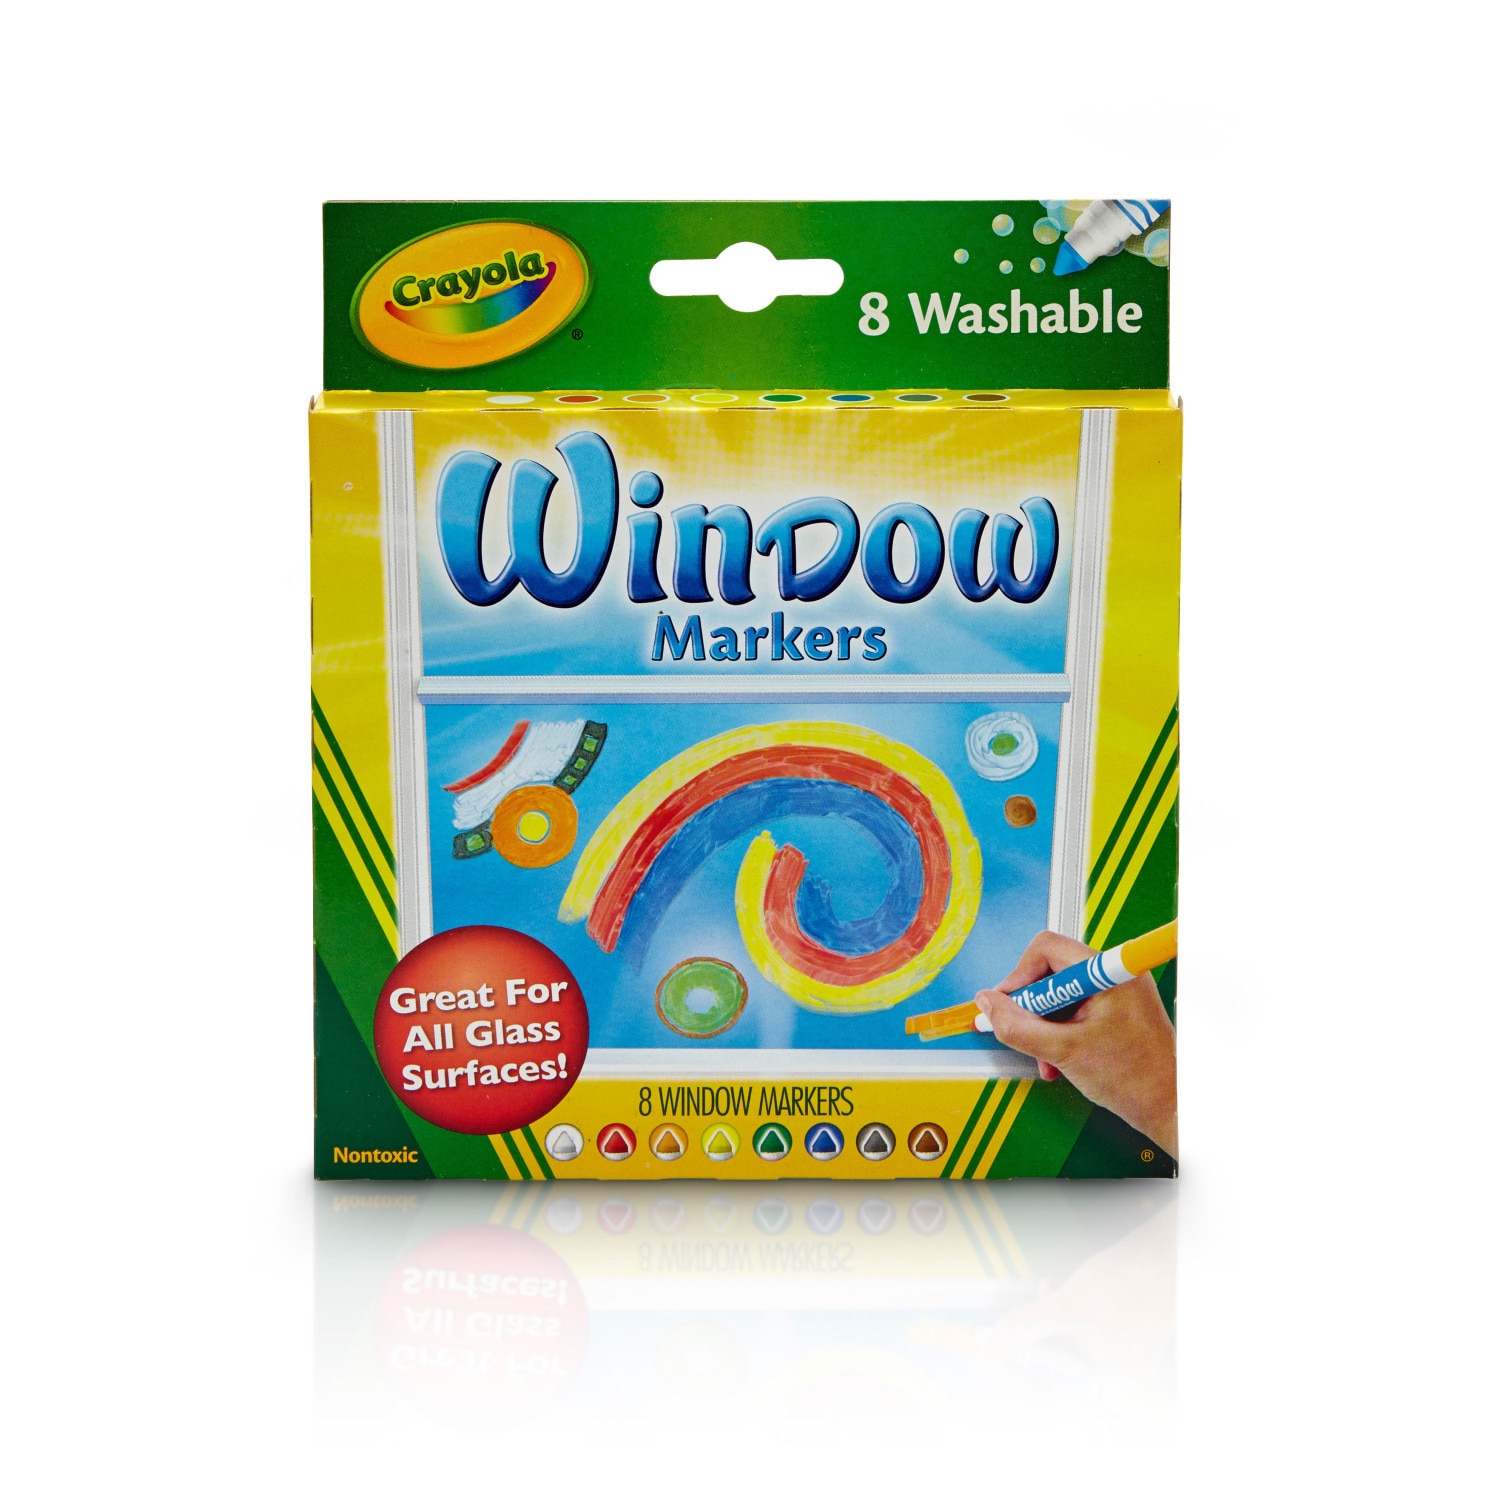 Crayola Washable Window Marker Set, 8-Colors